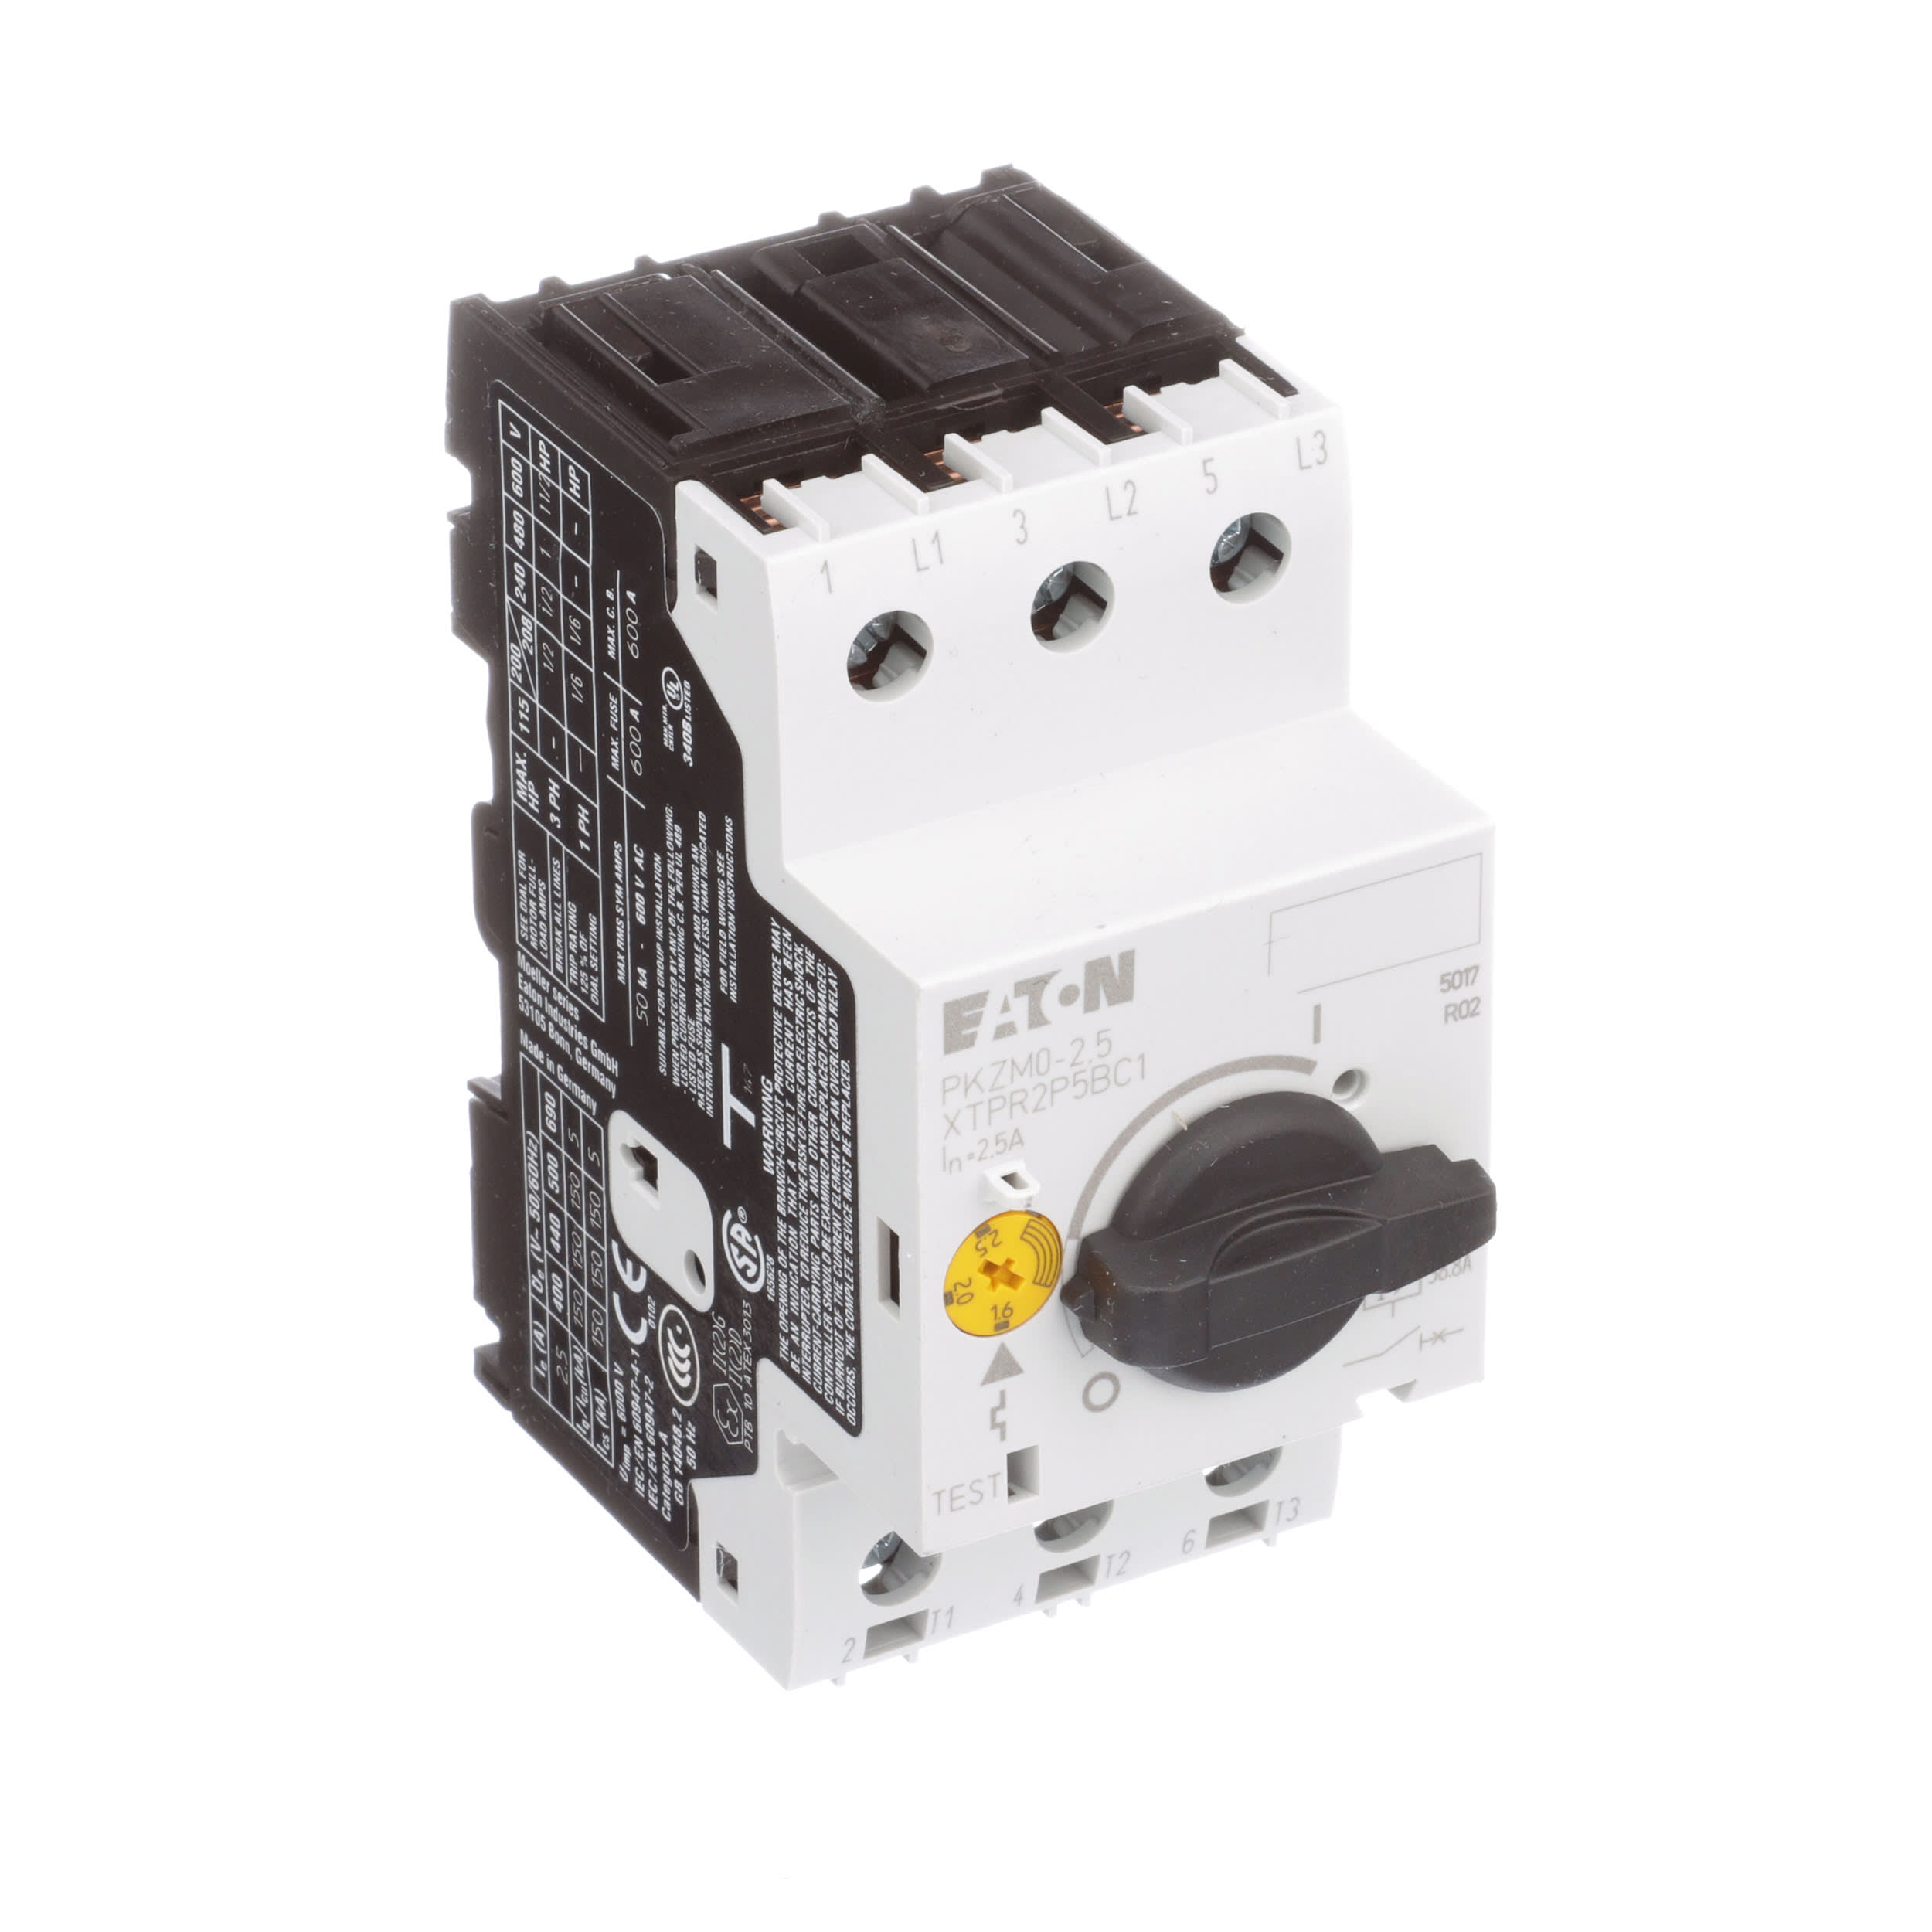 Klockner Moeller/EATON PKZM 0-2,5 motor protection switch 